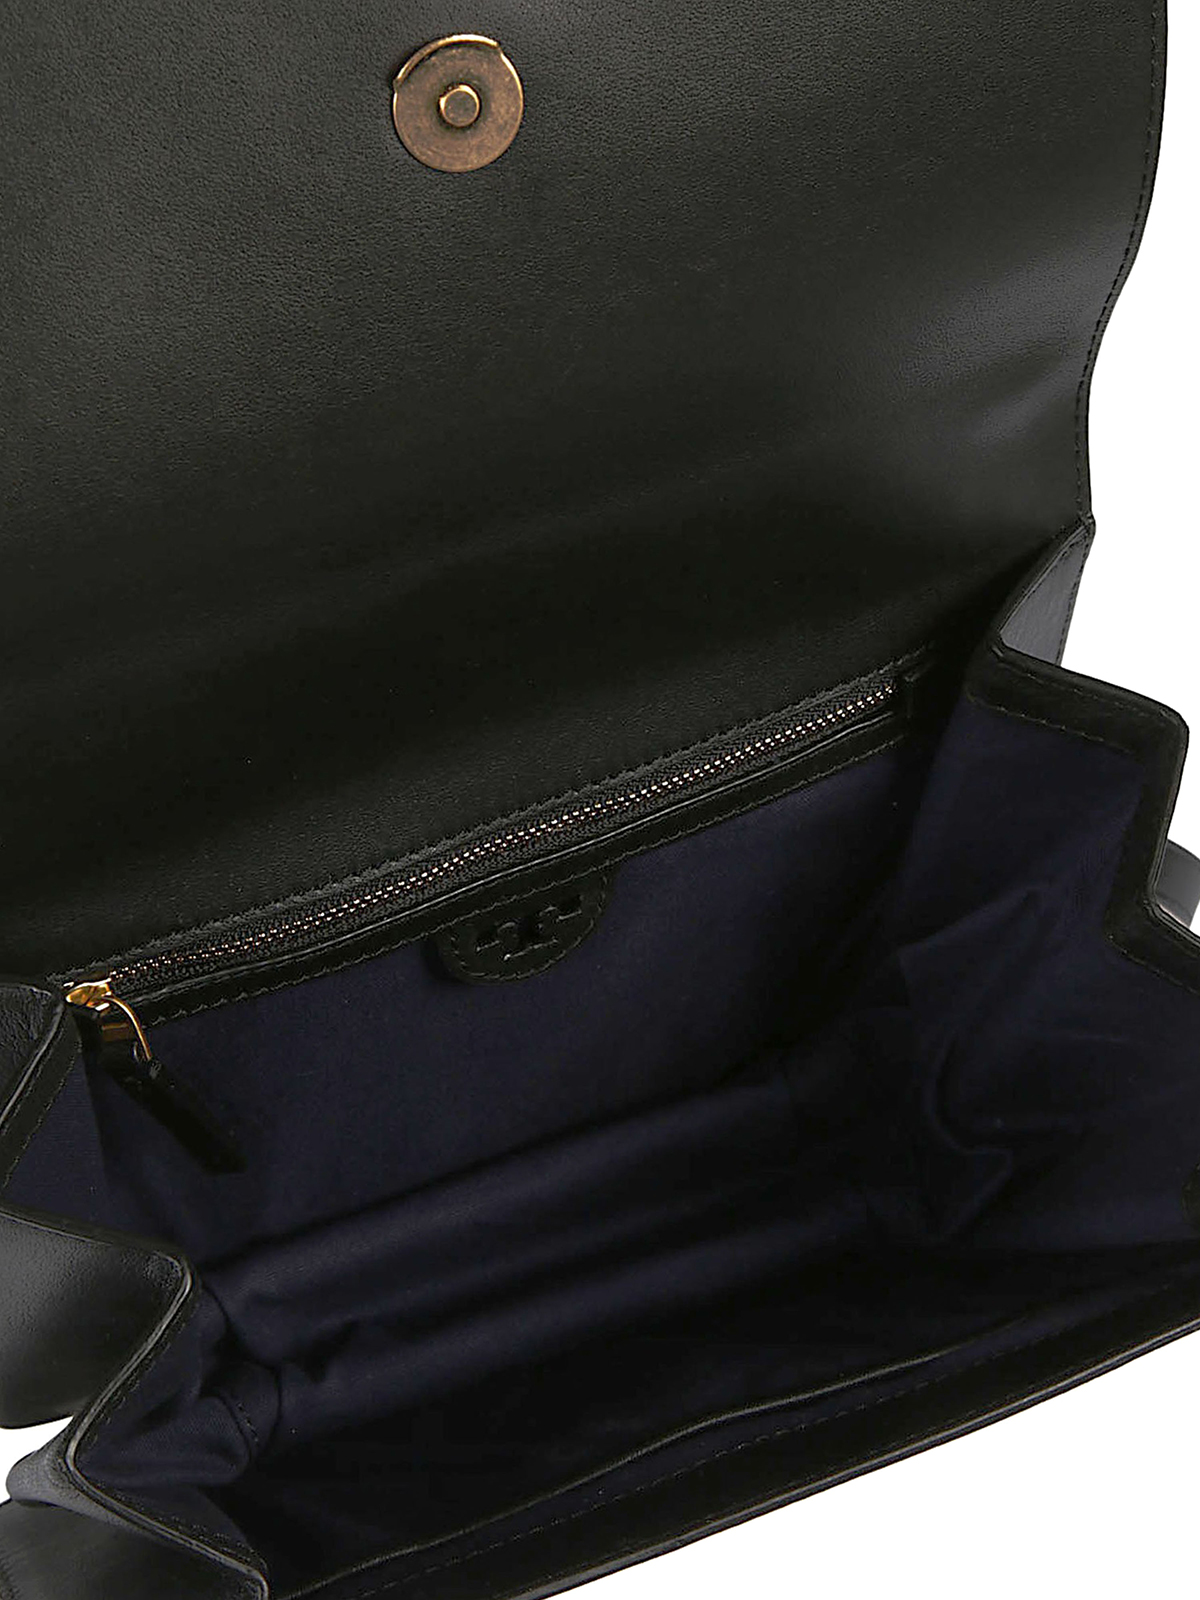 Shoulder bags Tory Burch - Brooke leather shoulder bag - 44778001